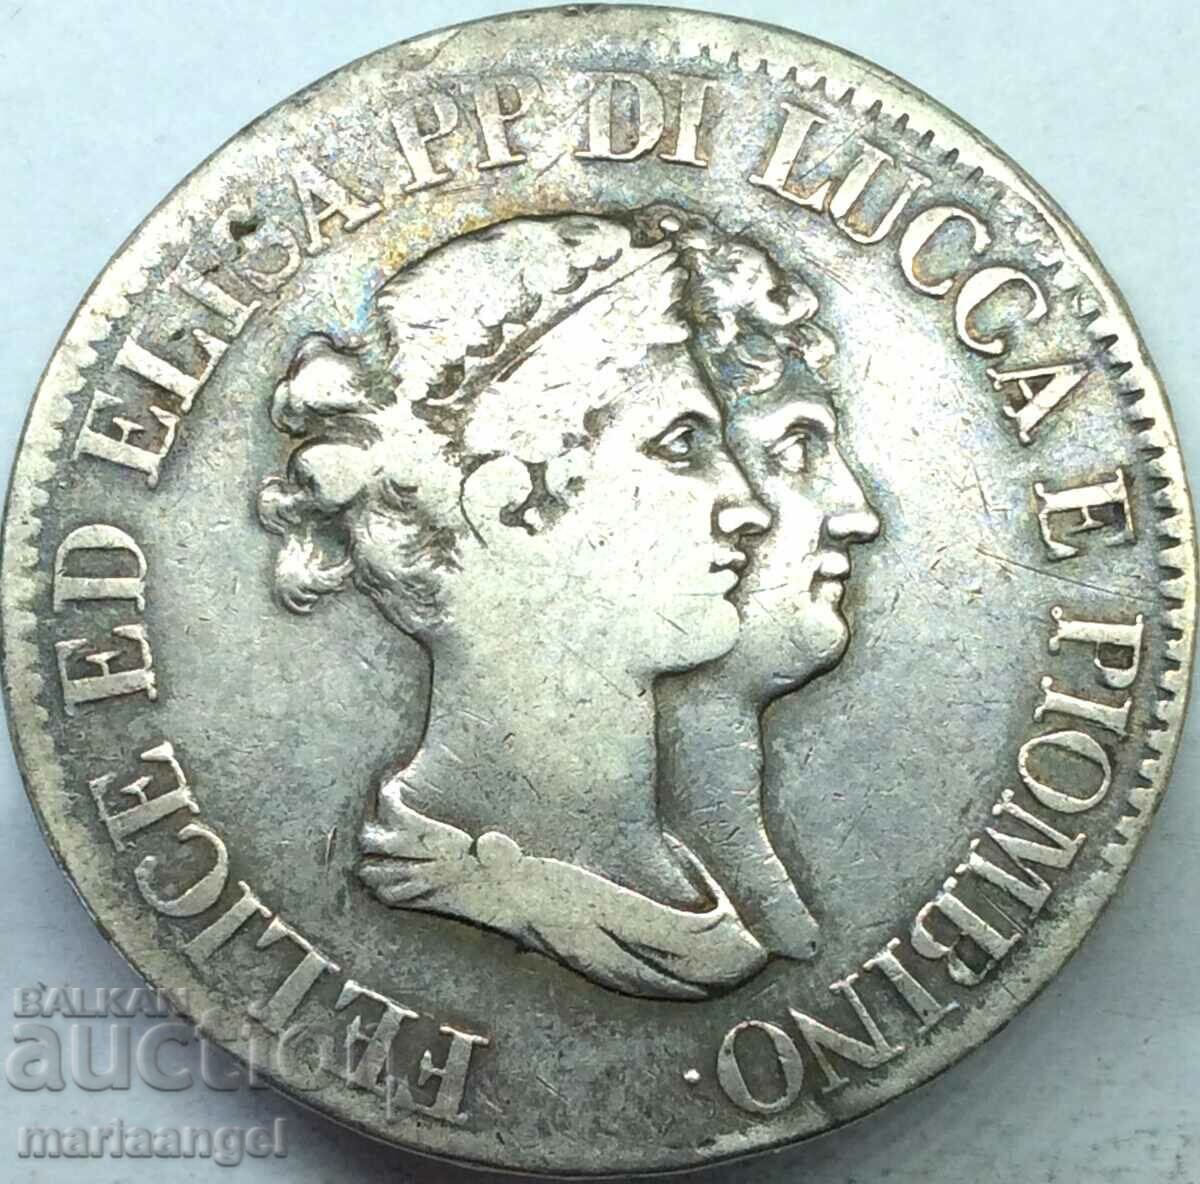 Ιταλία 5 φράγκα 1807 Luca Elisa Bonaparte and Felice